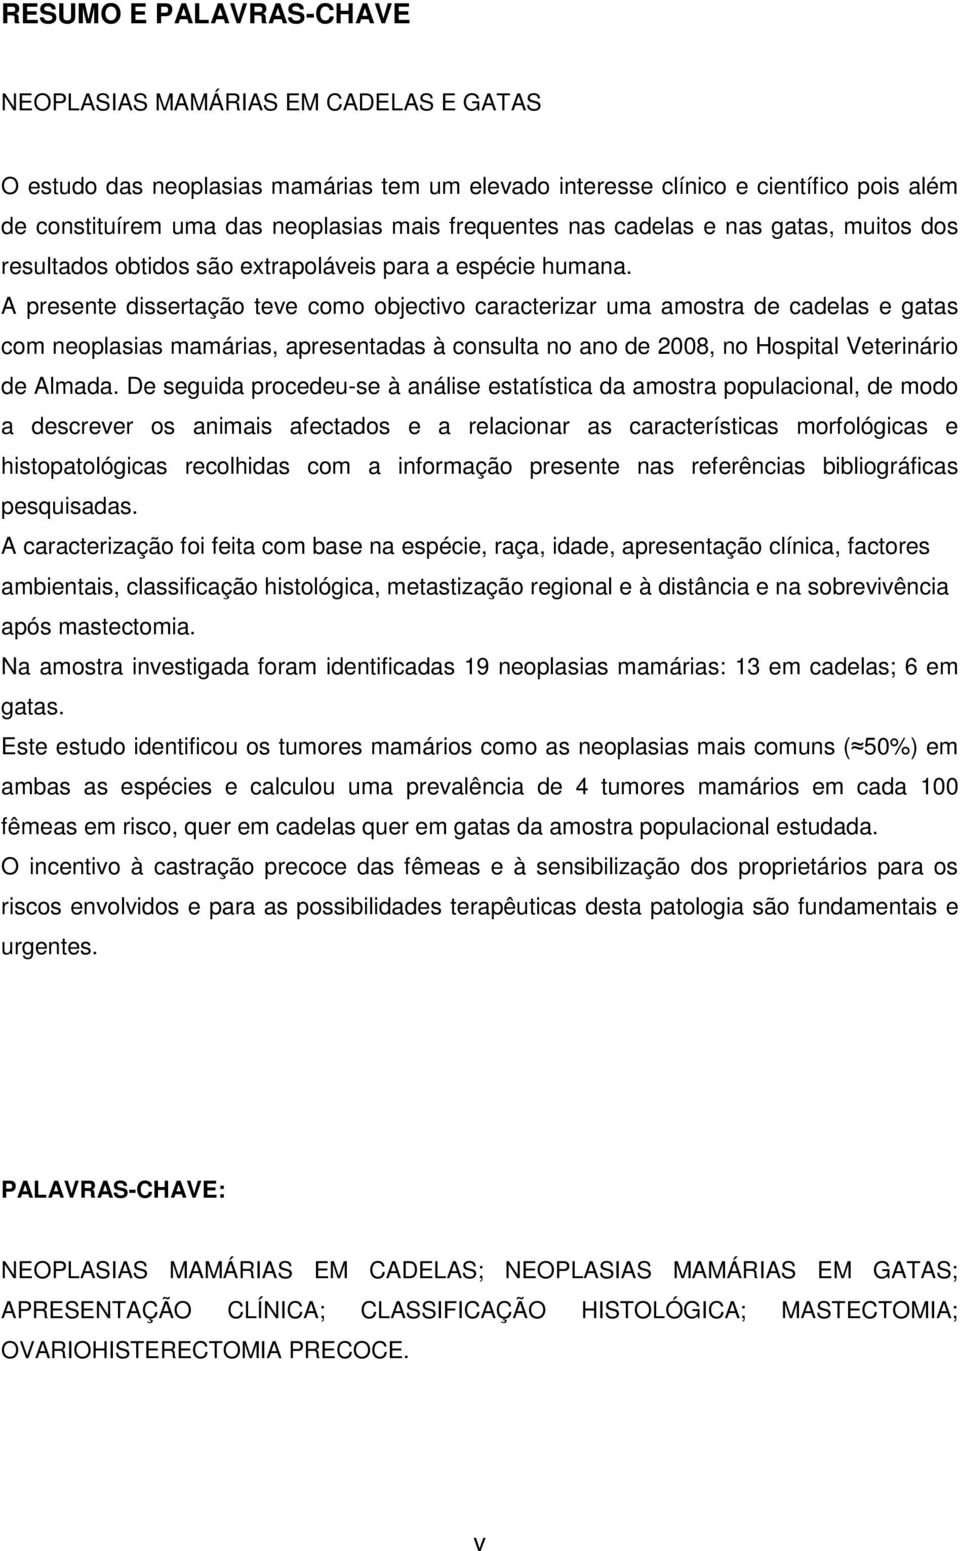 A presente dissertação teve como objectivo caracterizar uma amostra de cadelas e gatas com neoplasias mamárias, apresentadas à consulta no ano de 2008, no Hospital Veterinário de Almada.